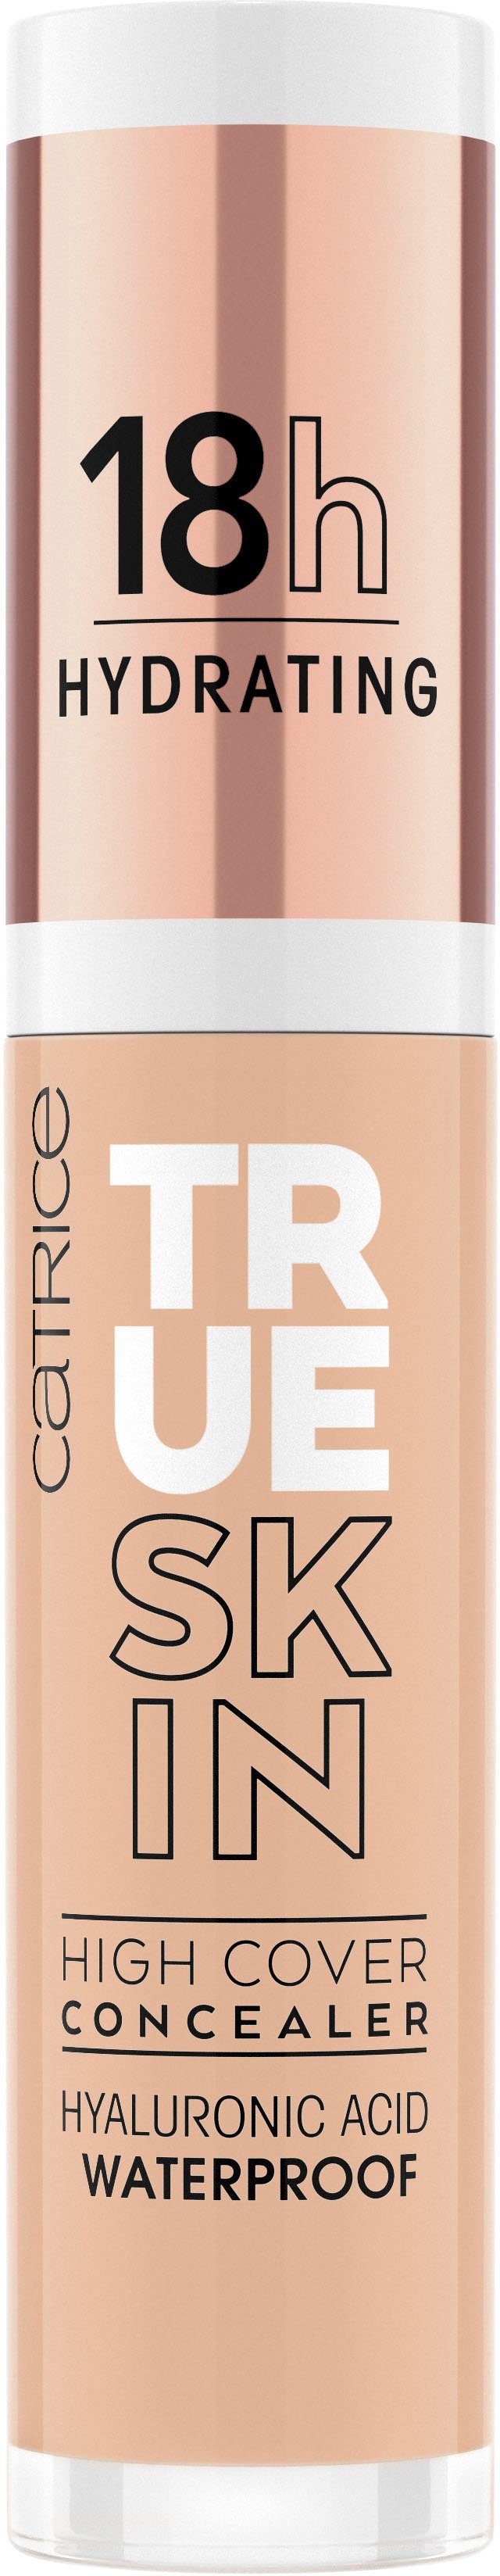 True Cover High 3-tlg. Skin Warm Concealer Catrice Beige Concealer,